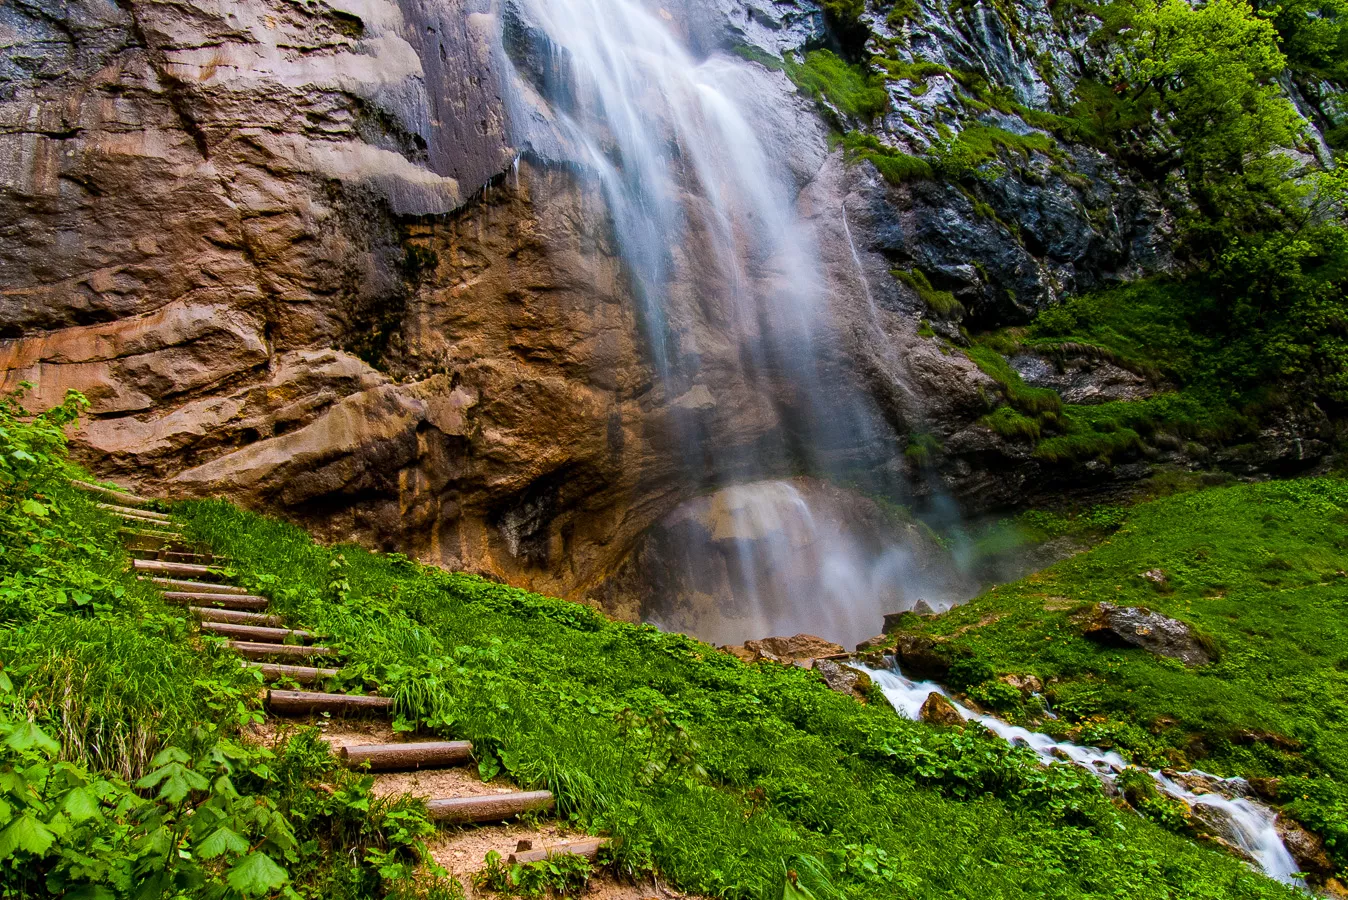 Skakavac Waterfall in Bosnia and Herzegovina, Europe | Waterfalls,Trekking & Hiking - Rated 3.6